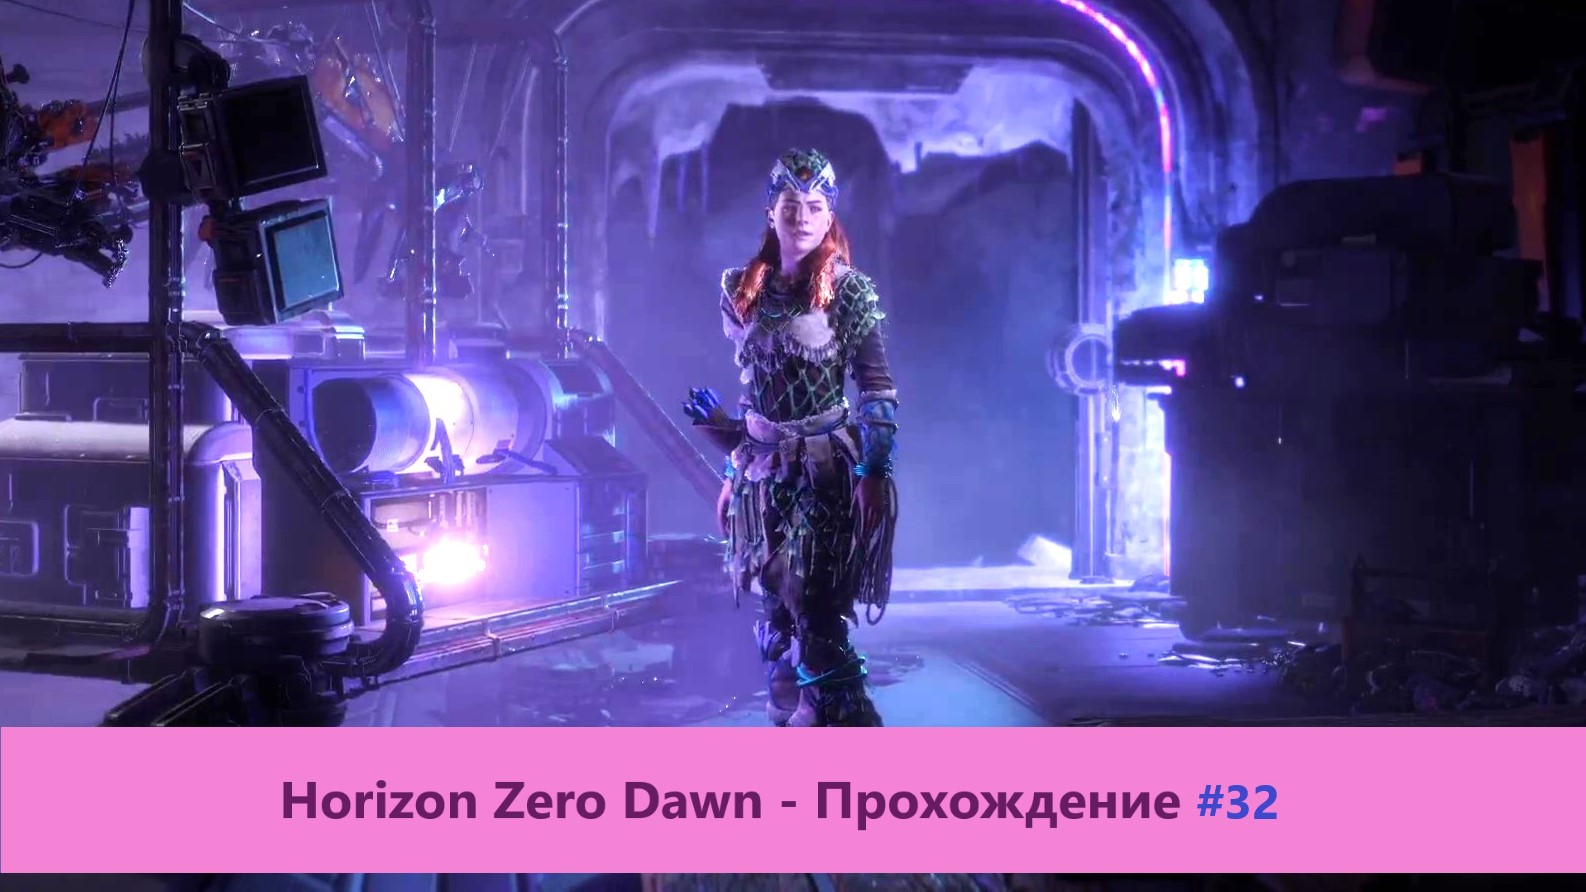 Horizon Zero Dawn - Прохождение #32